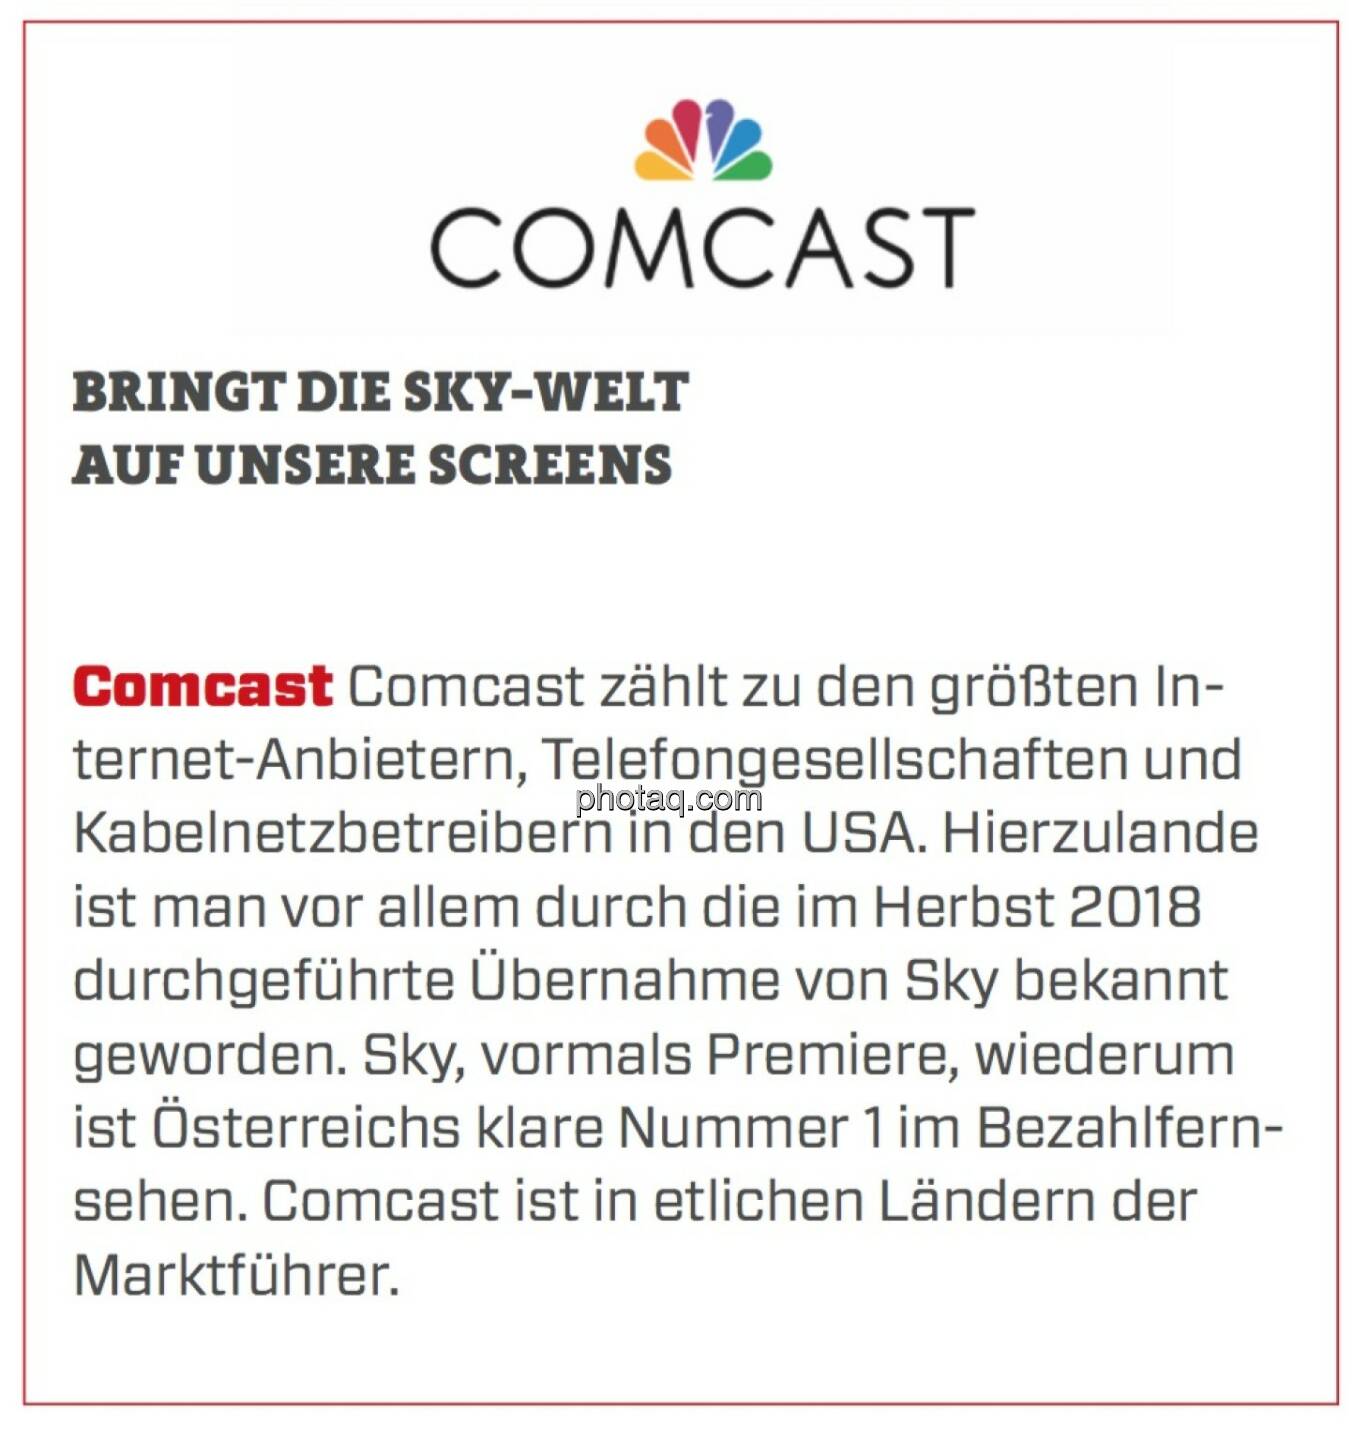 Comcast - Bringt die Sky-Welt auf unsere Screens: Comcast zählt zu den größten Internet-Anbietern, Telefongesellschaften und Kabelnetzbetreibern in den USA. Hierzulande ist man vor allem durch die im Herbst 2018 durchgeführte Übernahme von Sky bekannt geworden. Sky, vormals Premiere, wiederum ist Österreichs klare Nummer 1 im Bezahlfernsehen. Comcast ist in etlichen Ländern der Marktführer.